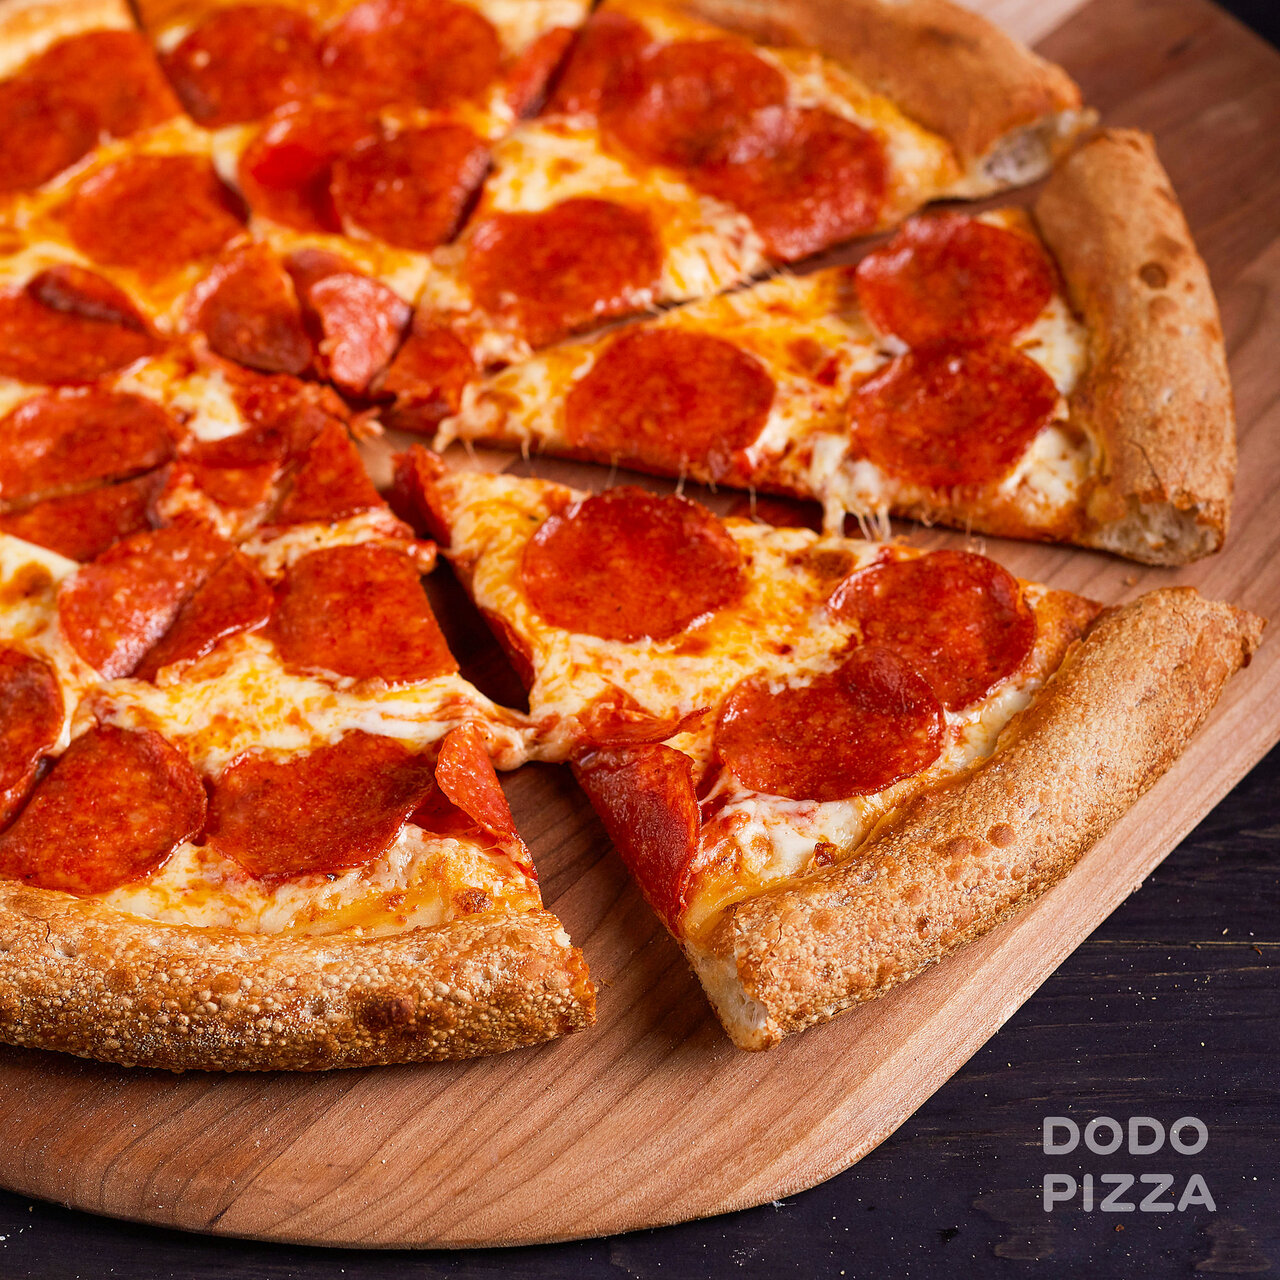 сколько стоит маленькая пицца пепперони в додо фото 9